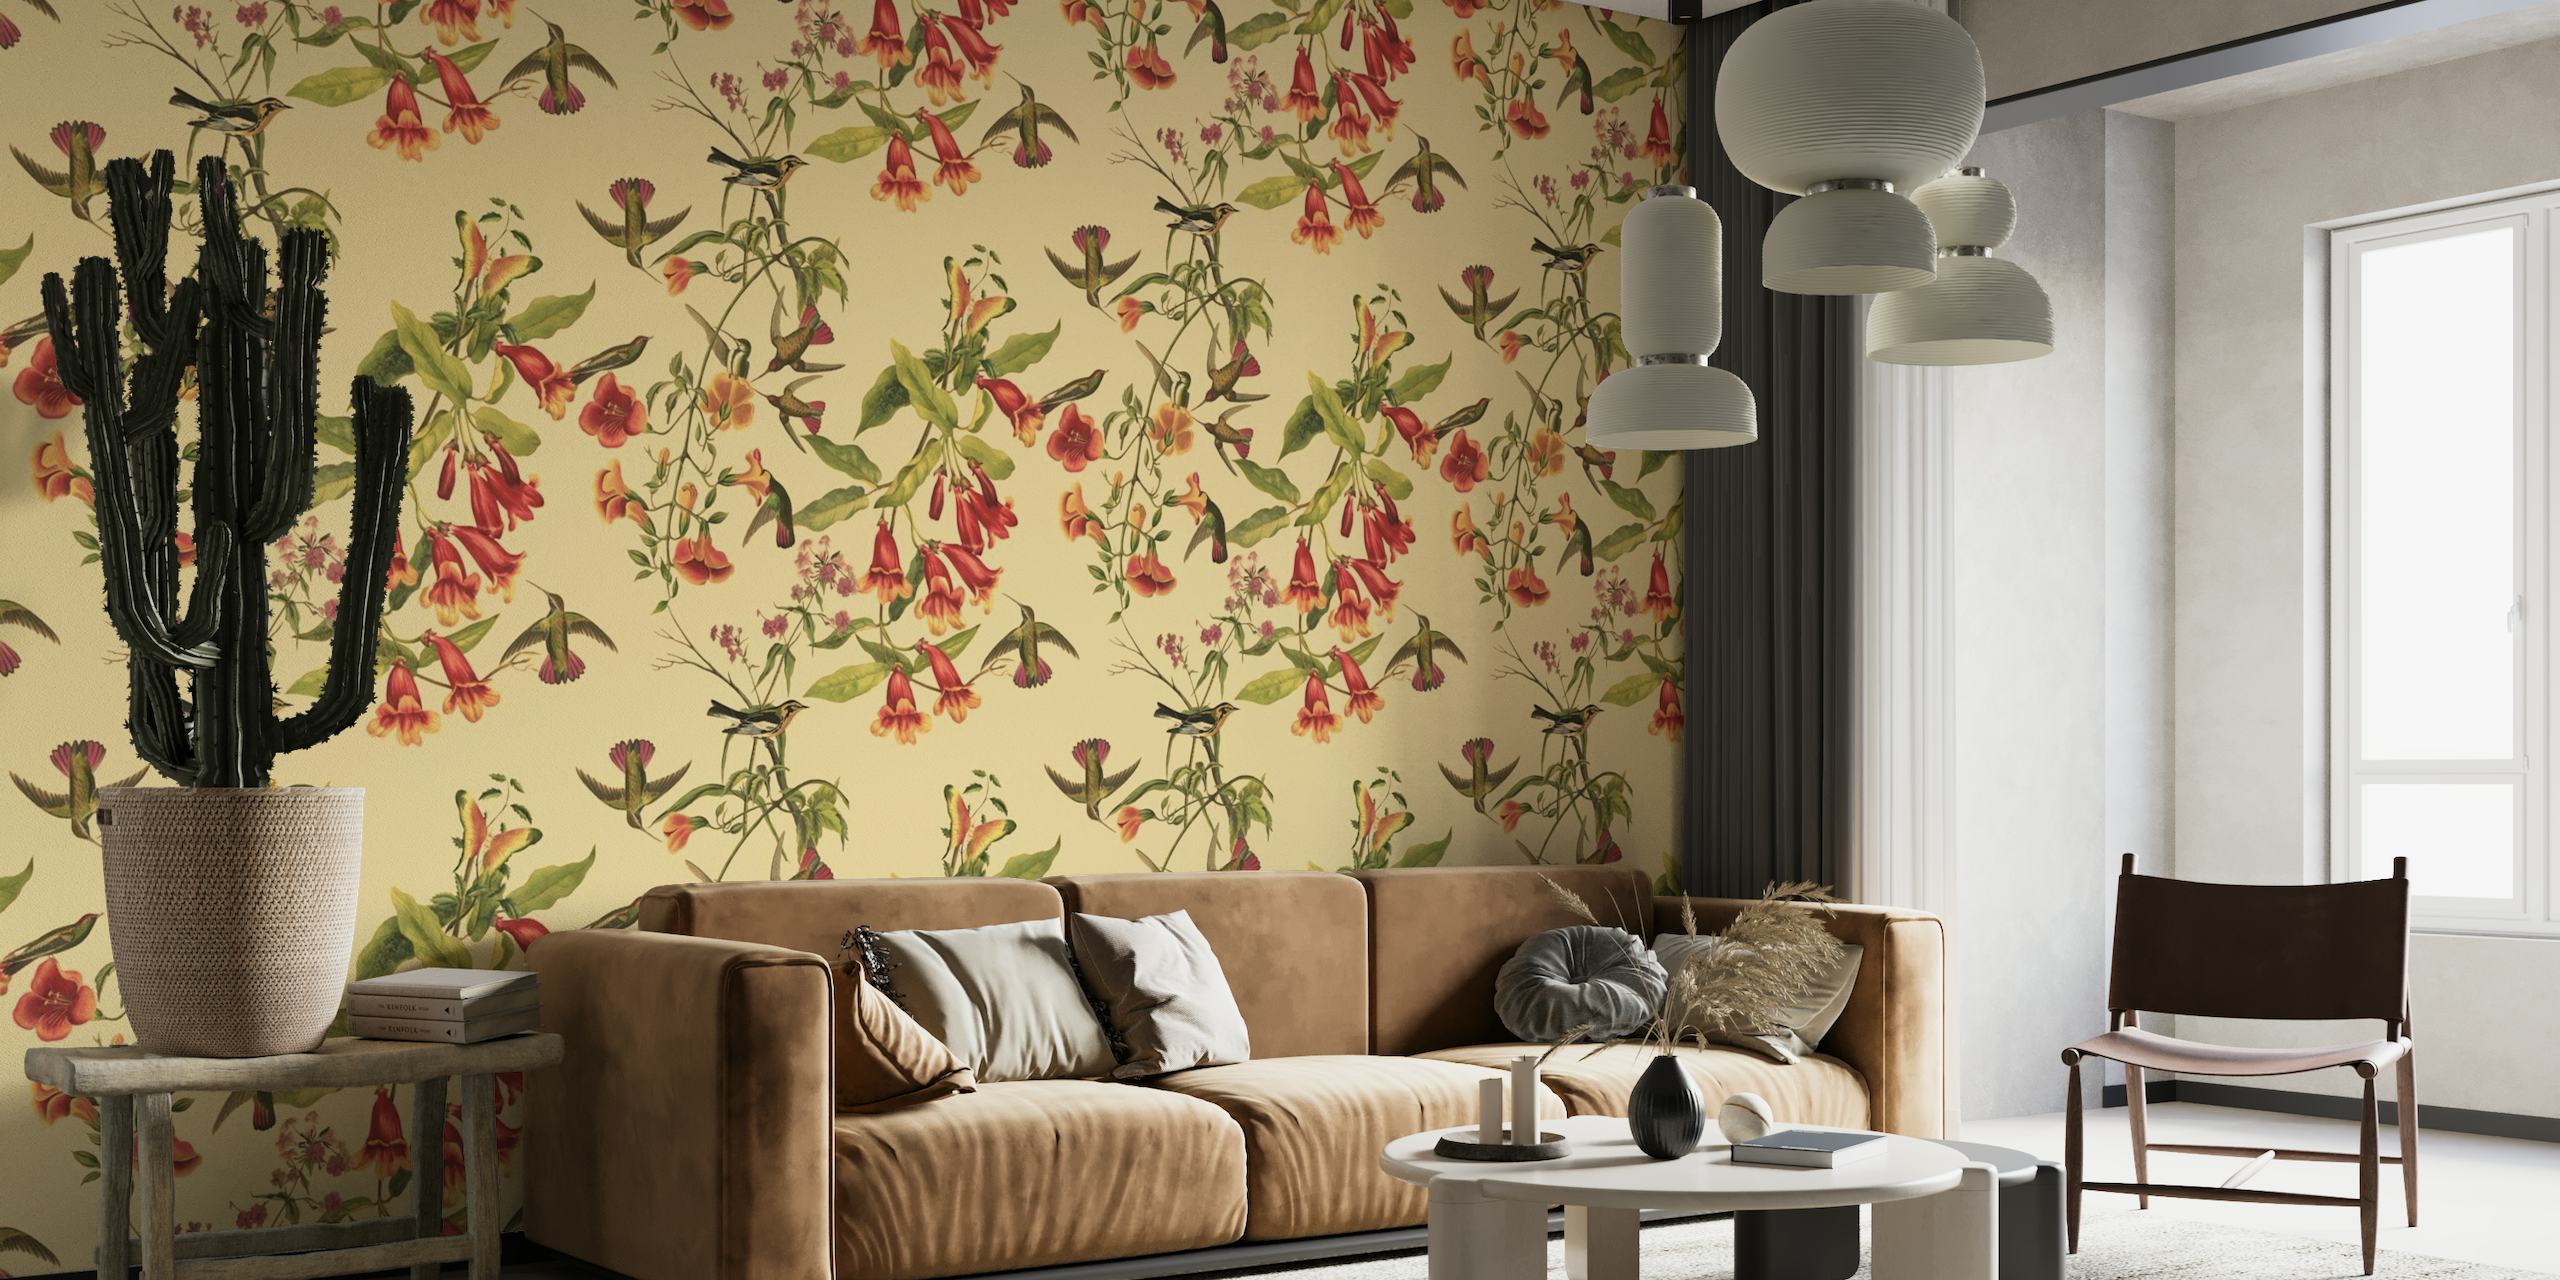 Elegante murale con colibrì e motivi floreali antichi su uno sfondo neutro